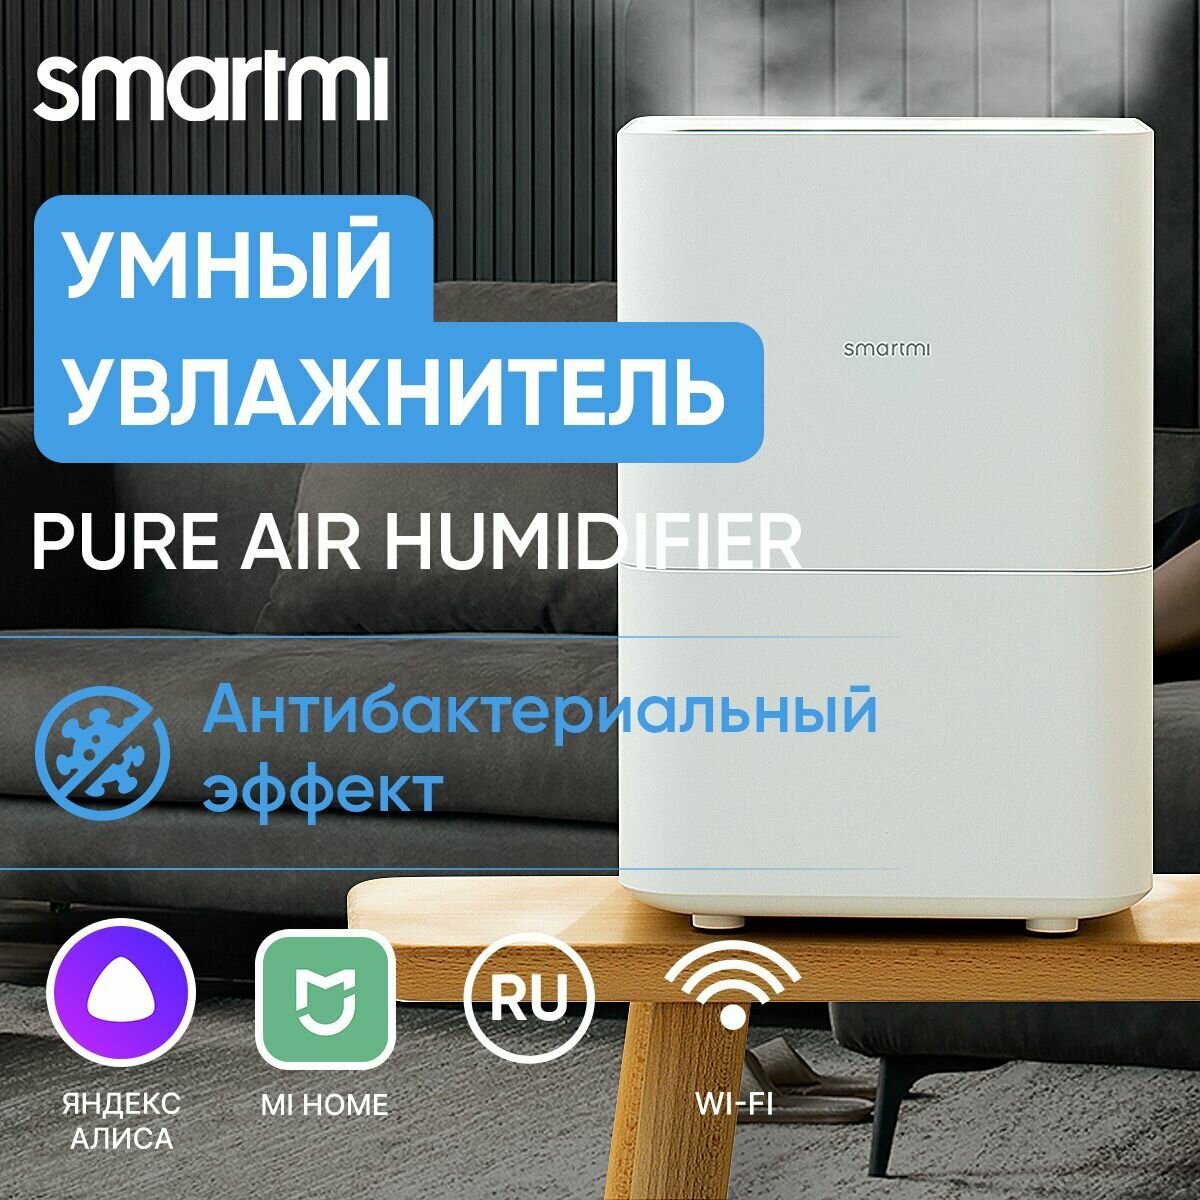 Увлажнитель воздуха Smartmi Evaporative Zhimi Air Humidifier 1 RU / умный дом / объем 4 л / верхний залив воды